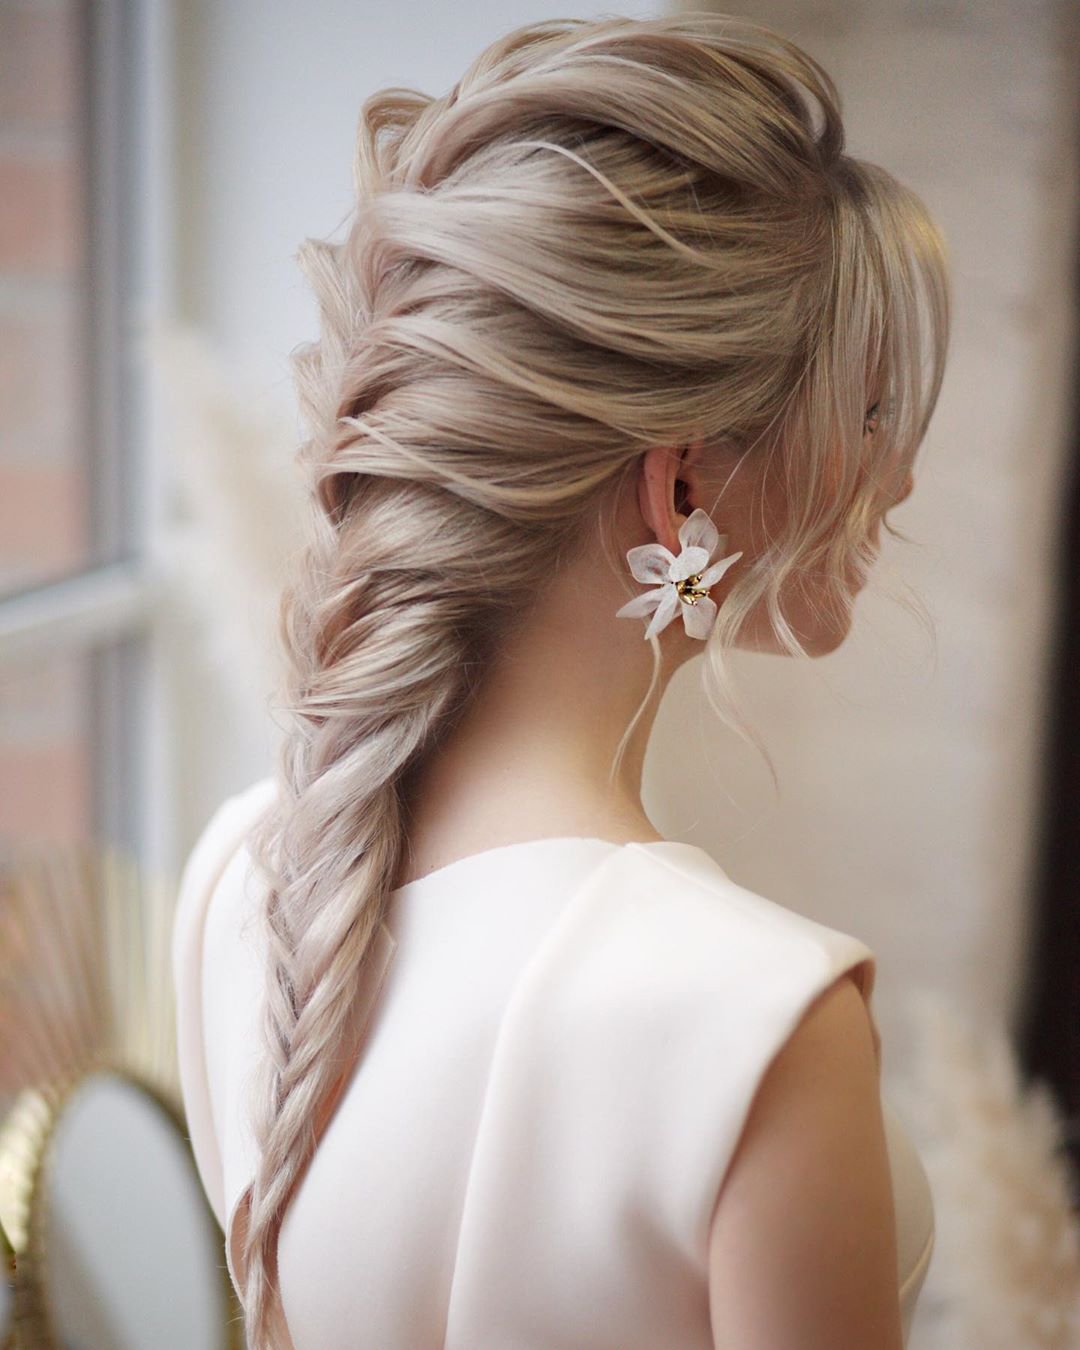 braided wedding hair textured blonde brench braid long hair_vera